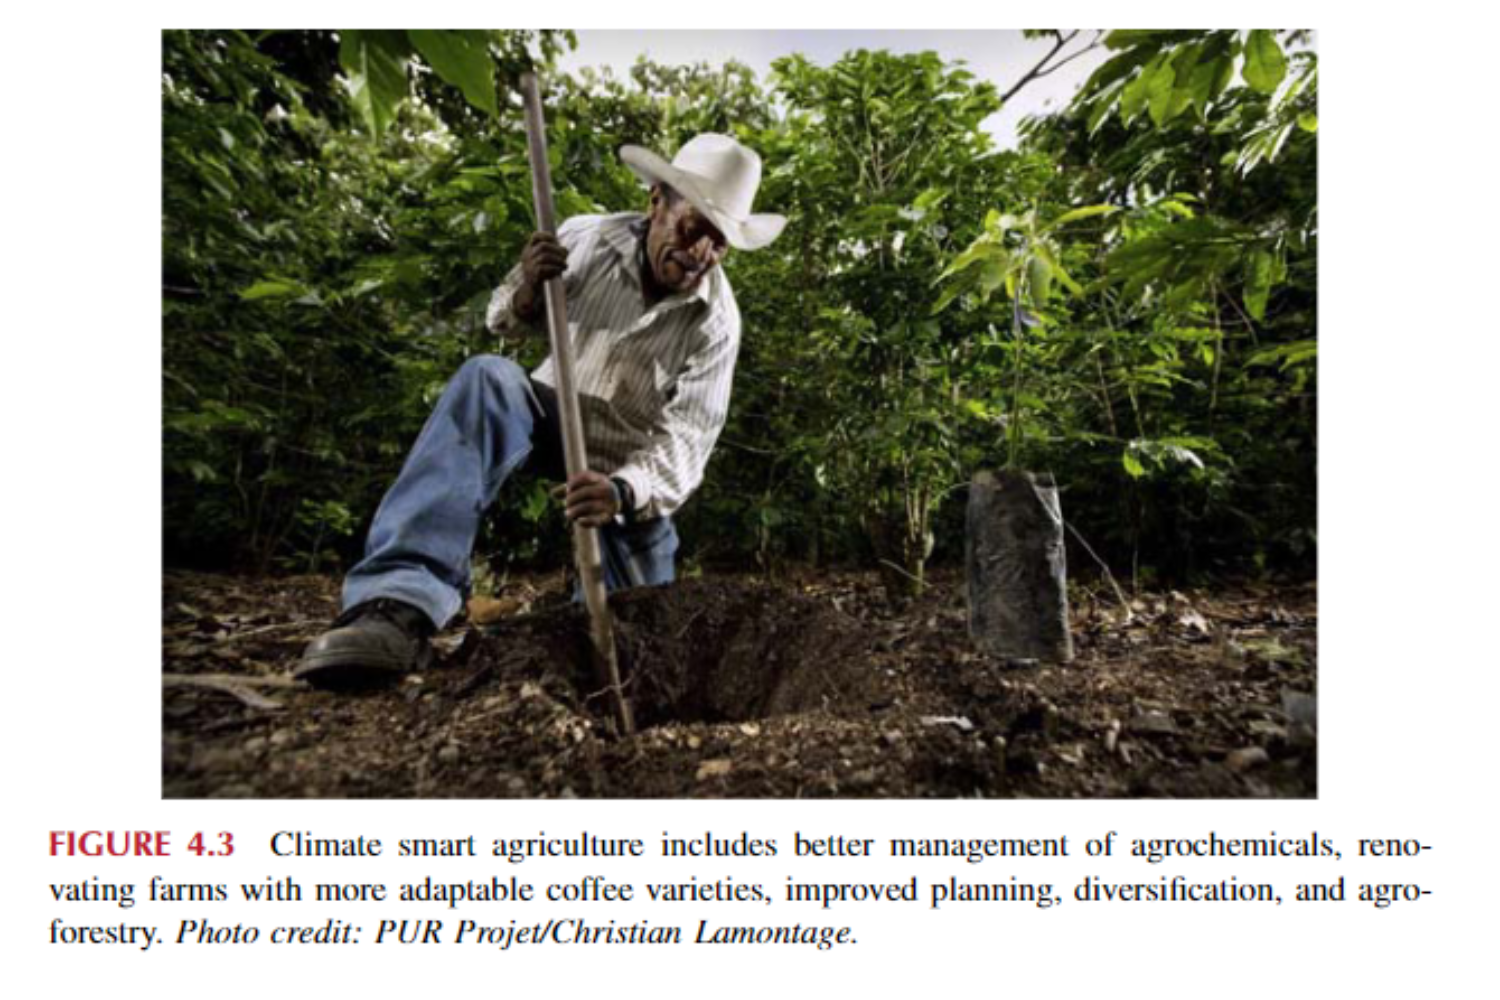 Nông nghiệp thông minh với khí hậu bao gồm quản lý tốt hơn hóa chất nông nghiệp, cải tạo trang trại với các giống cà phê thích ứng hơn, cải thiện quy hoạch, đa dạng hóa và nông lâm kết hợp.